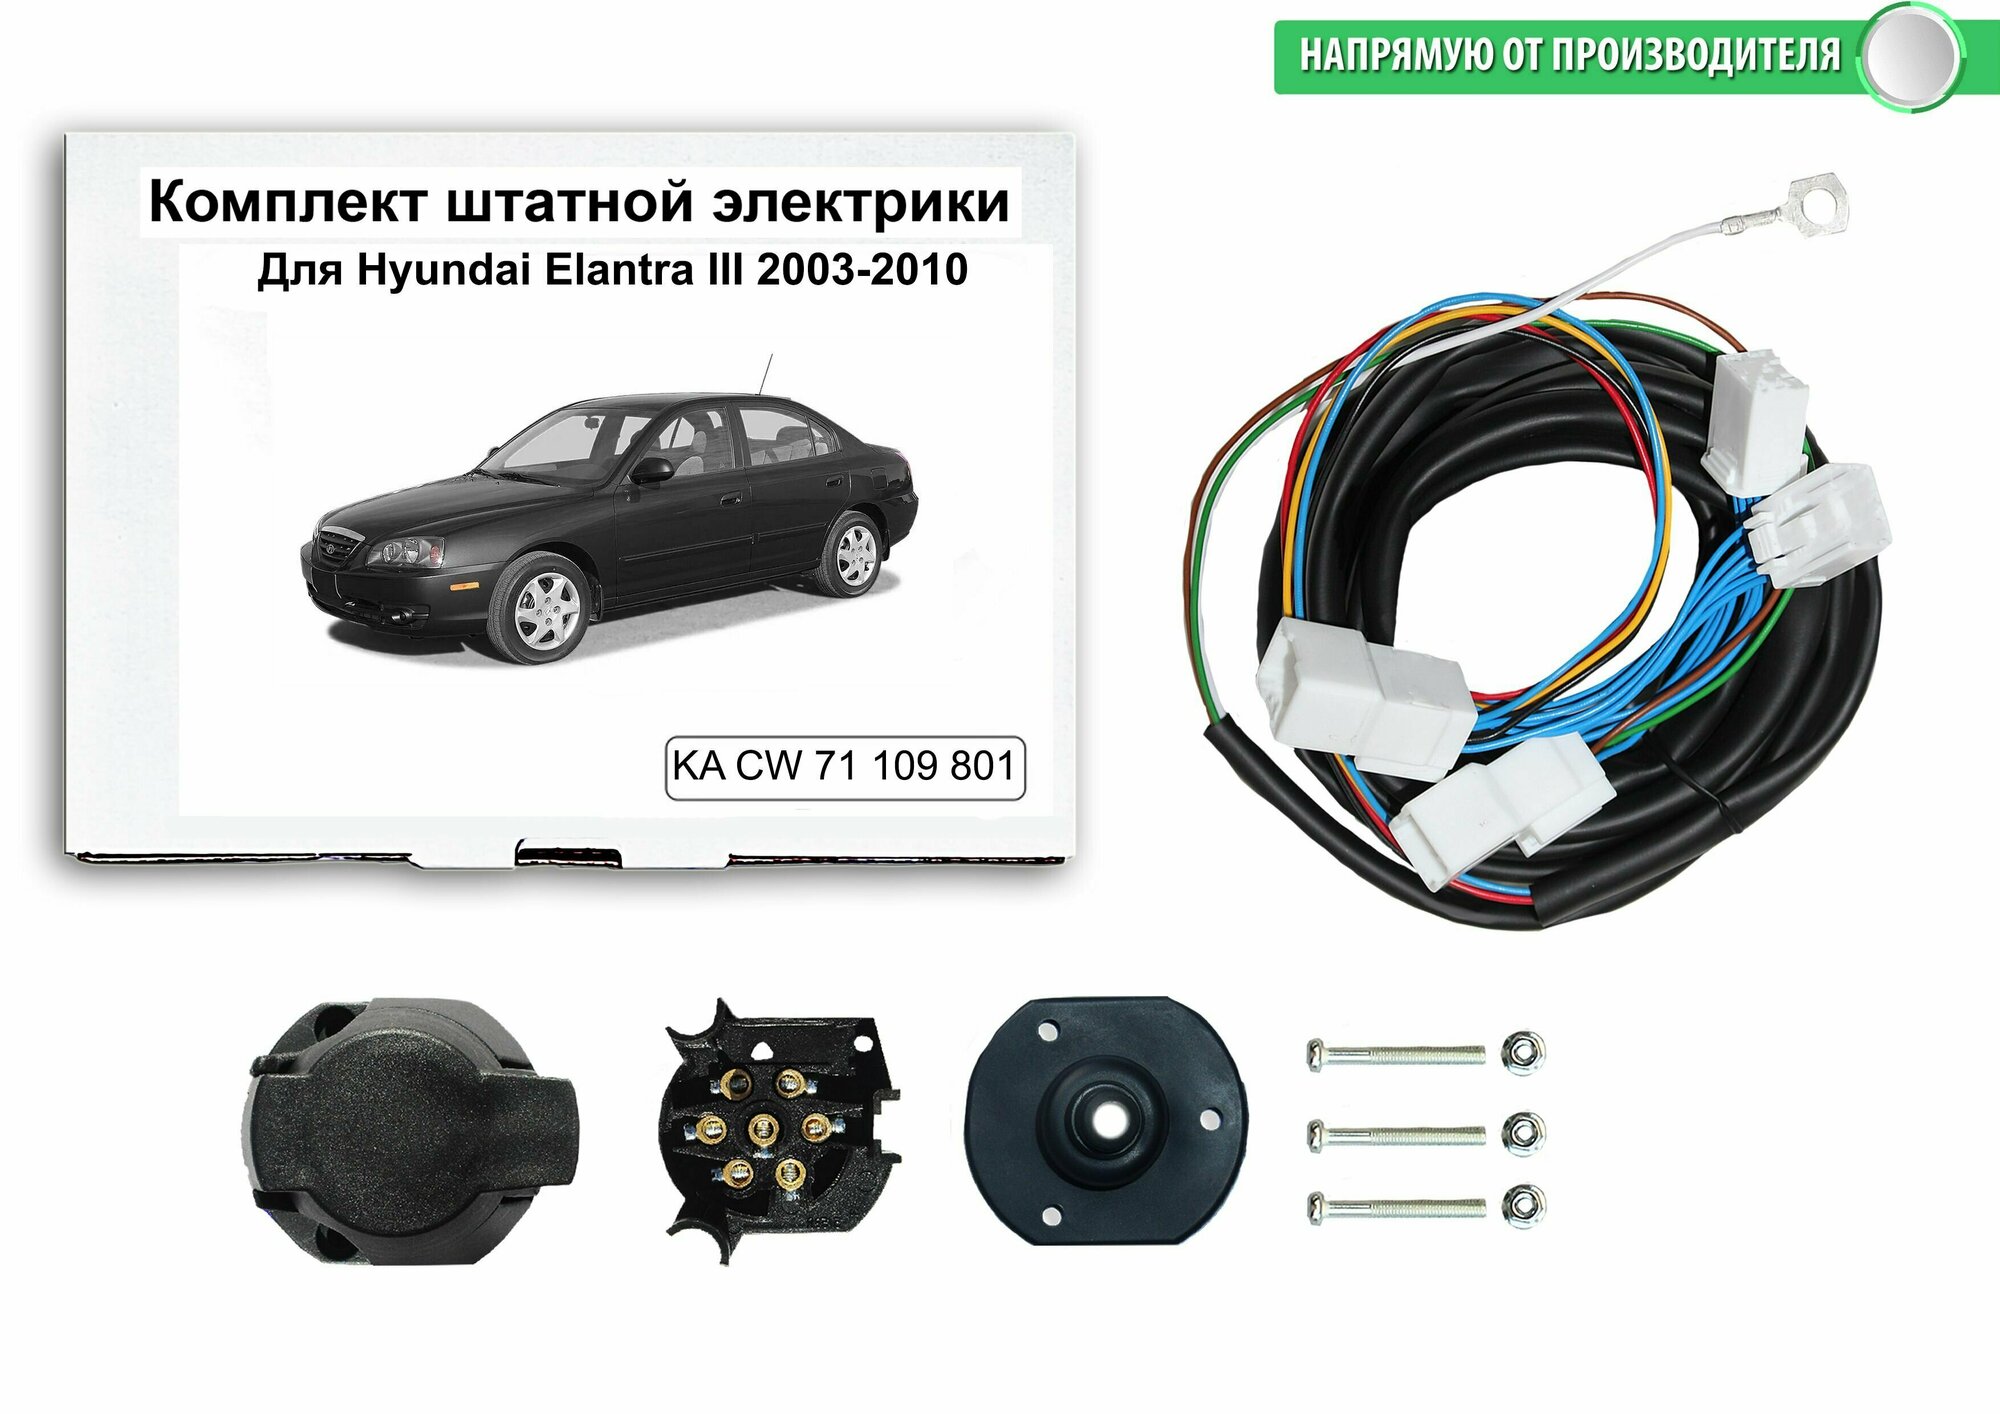 Комплект электропроводки для фаркопа Hyundai Elantra III 2003-2010 гг со штатными колодками